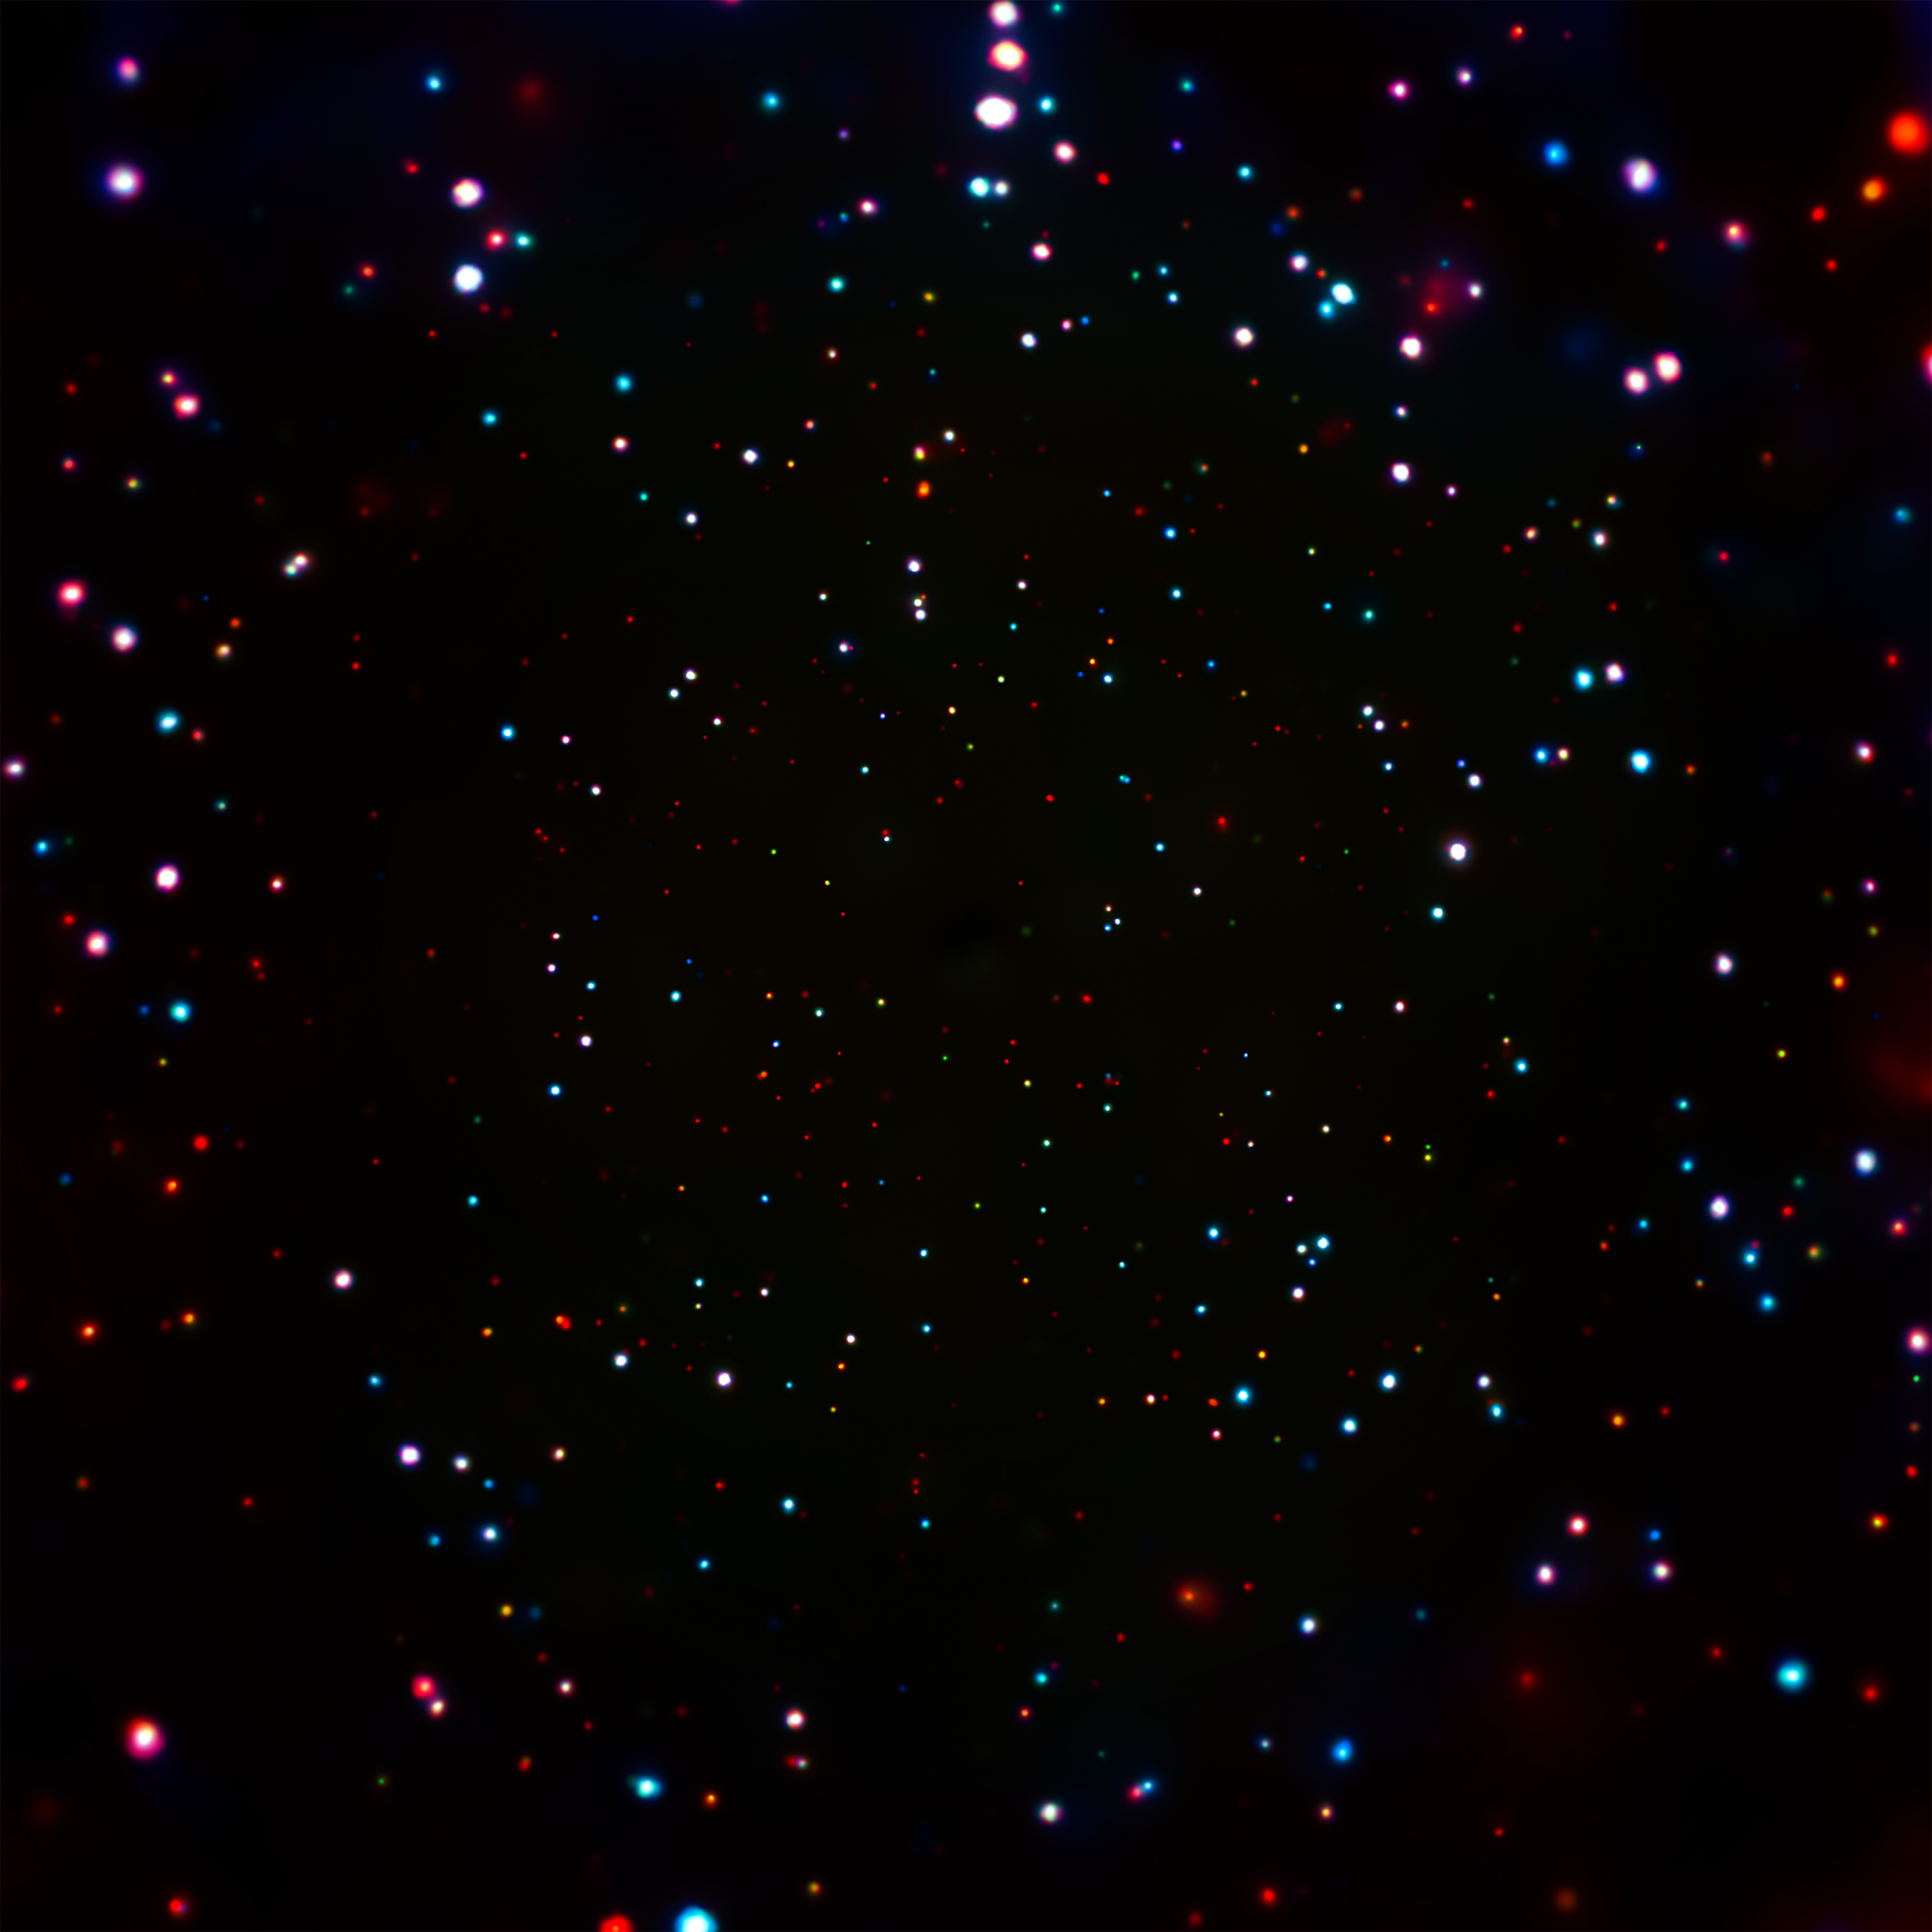 12 semaines d’exposition en rayons X pour découvrir les trous noirs de l’univers